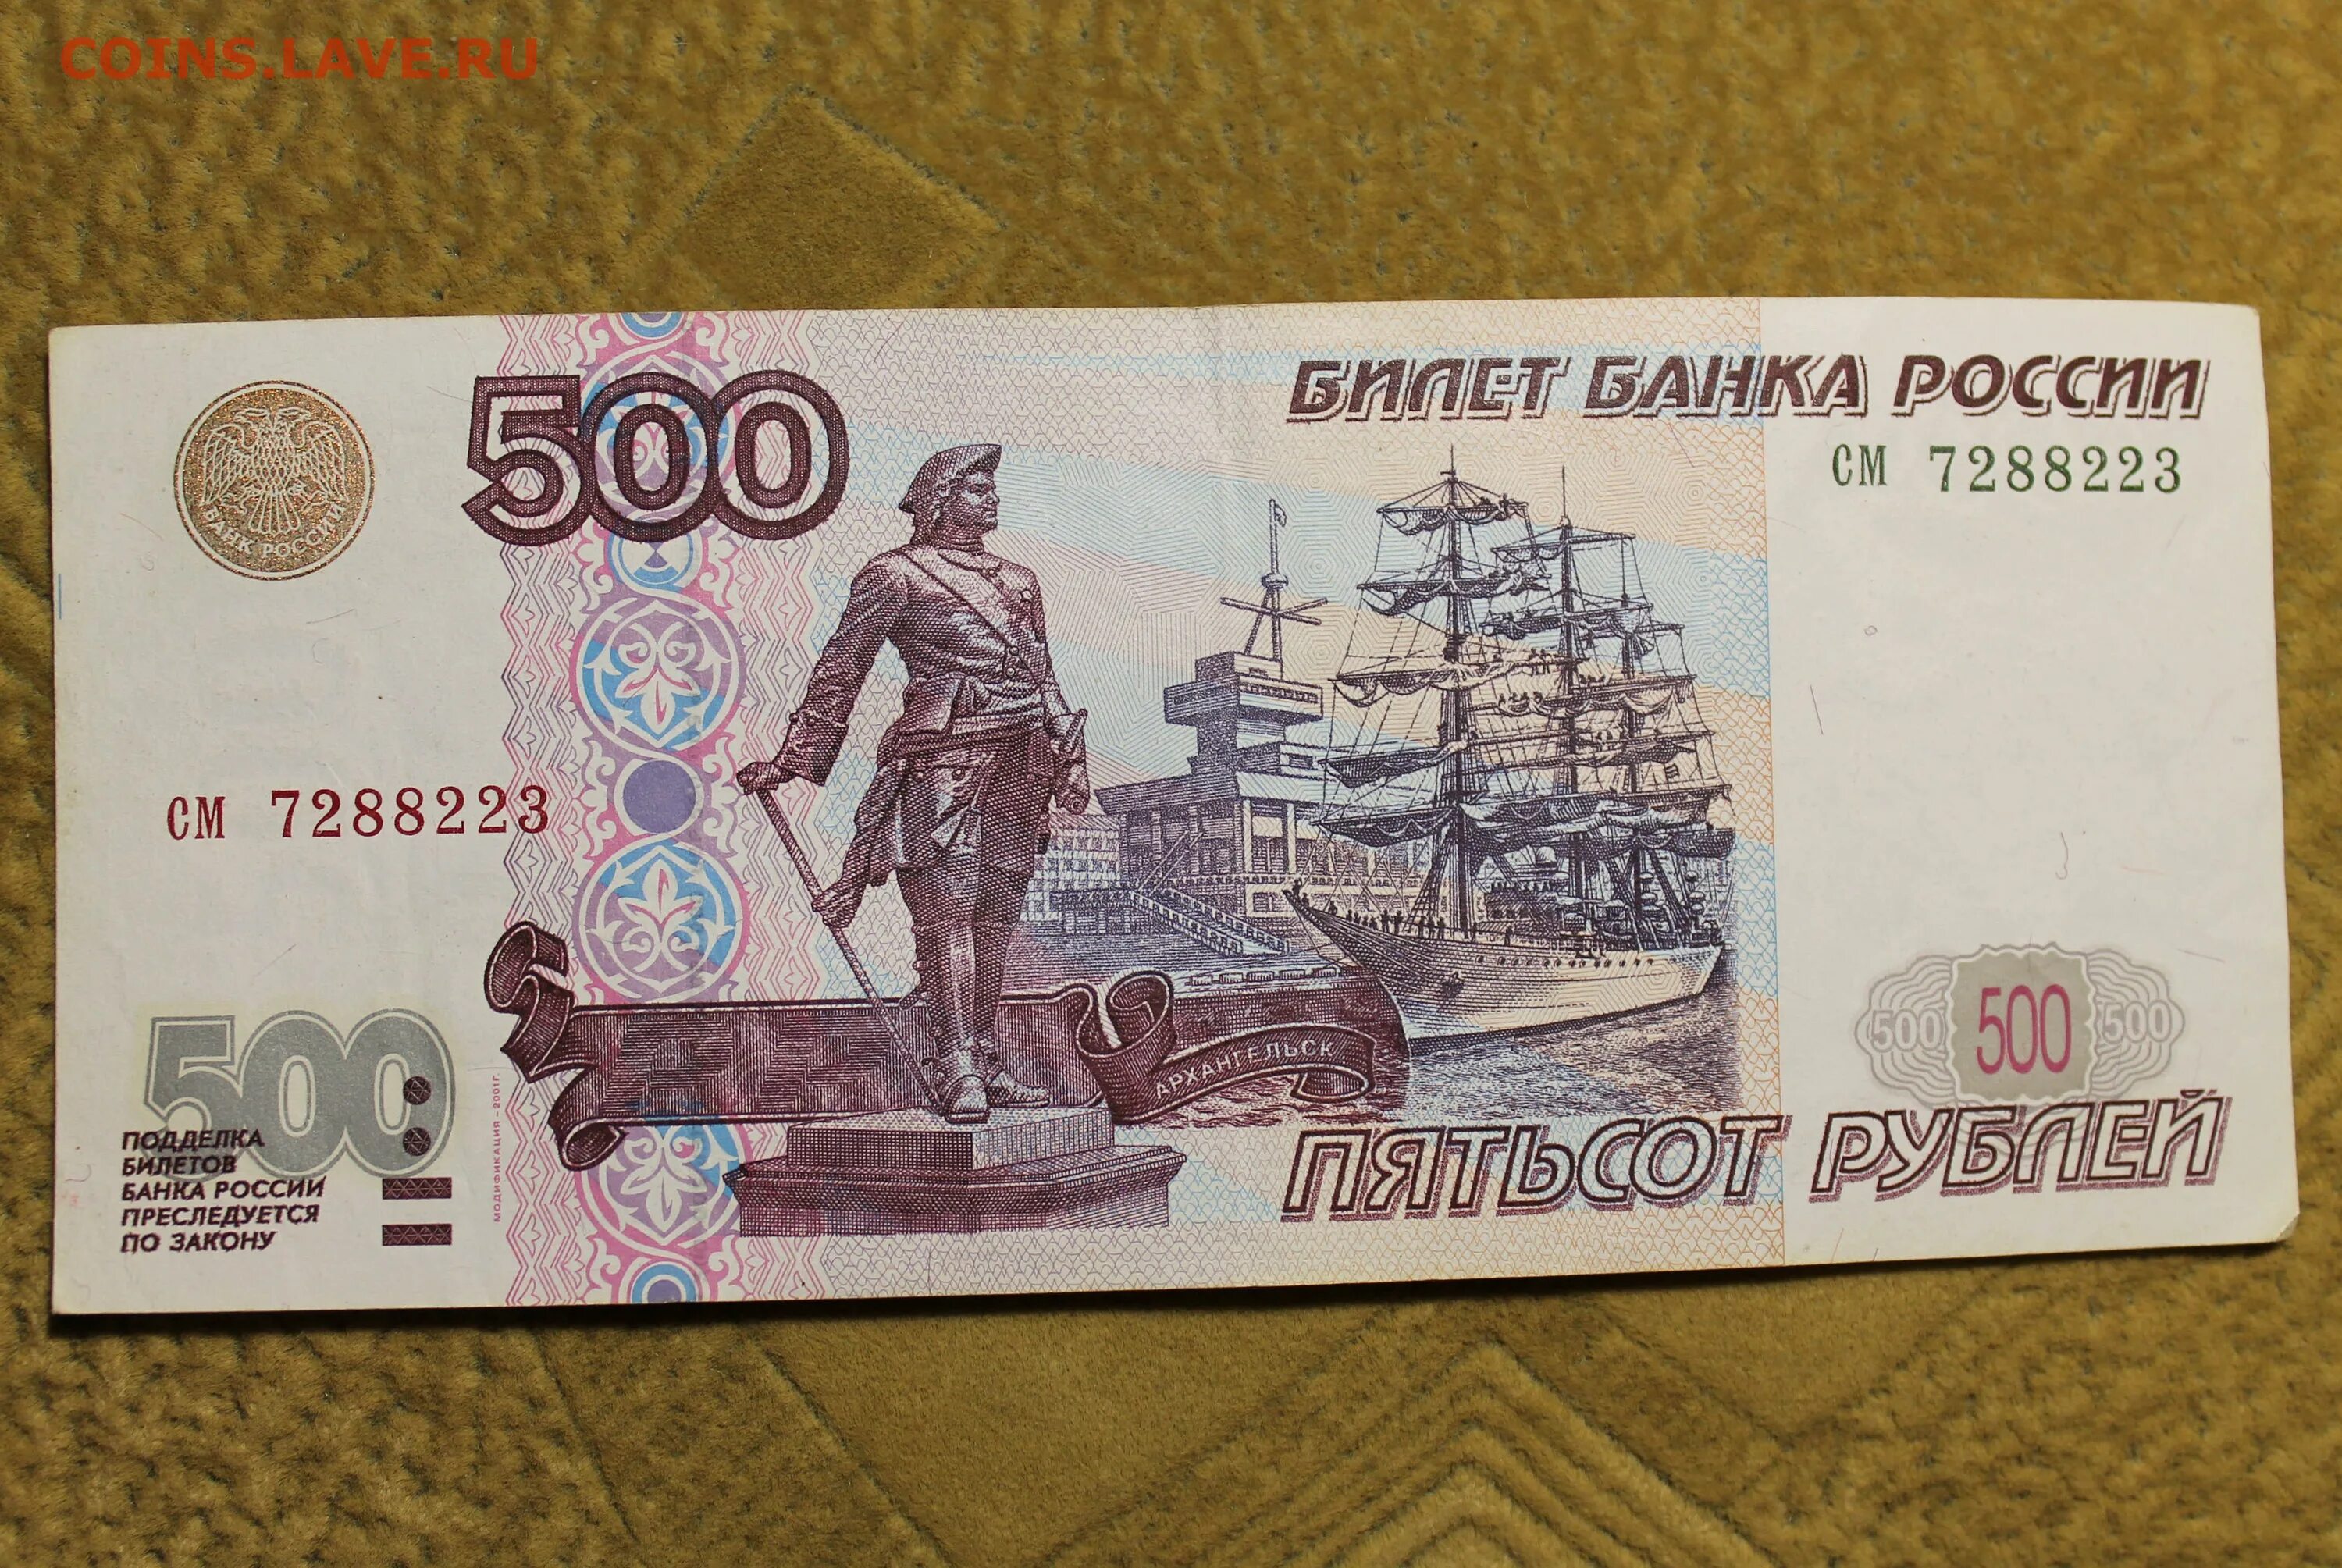 30 от 500 рублей. 500 Рублей 1997 г. модификация 2001 г. Купюра 500 рублей. Банкнота 500 рублей. 500 Рублей модификации.